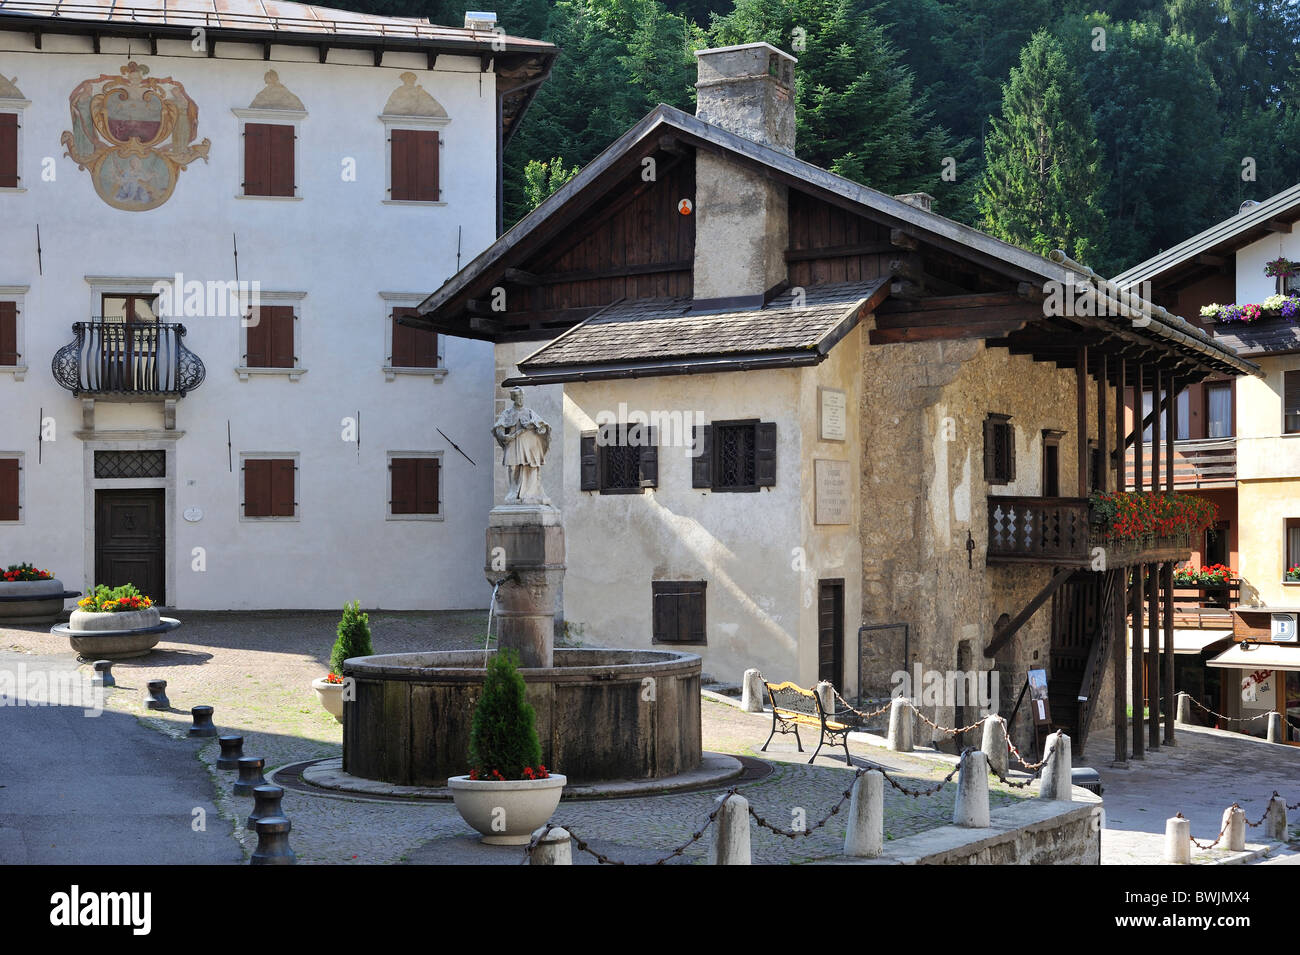 Birthplace of the painter Titian / Tiziano Vecelli / Tiziano Vecellio at Pieve di Cadore, Dolomites, Italy Stock Photo